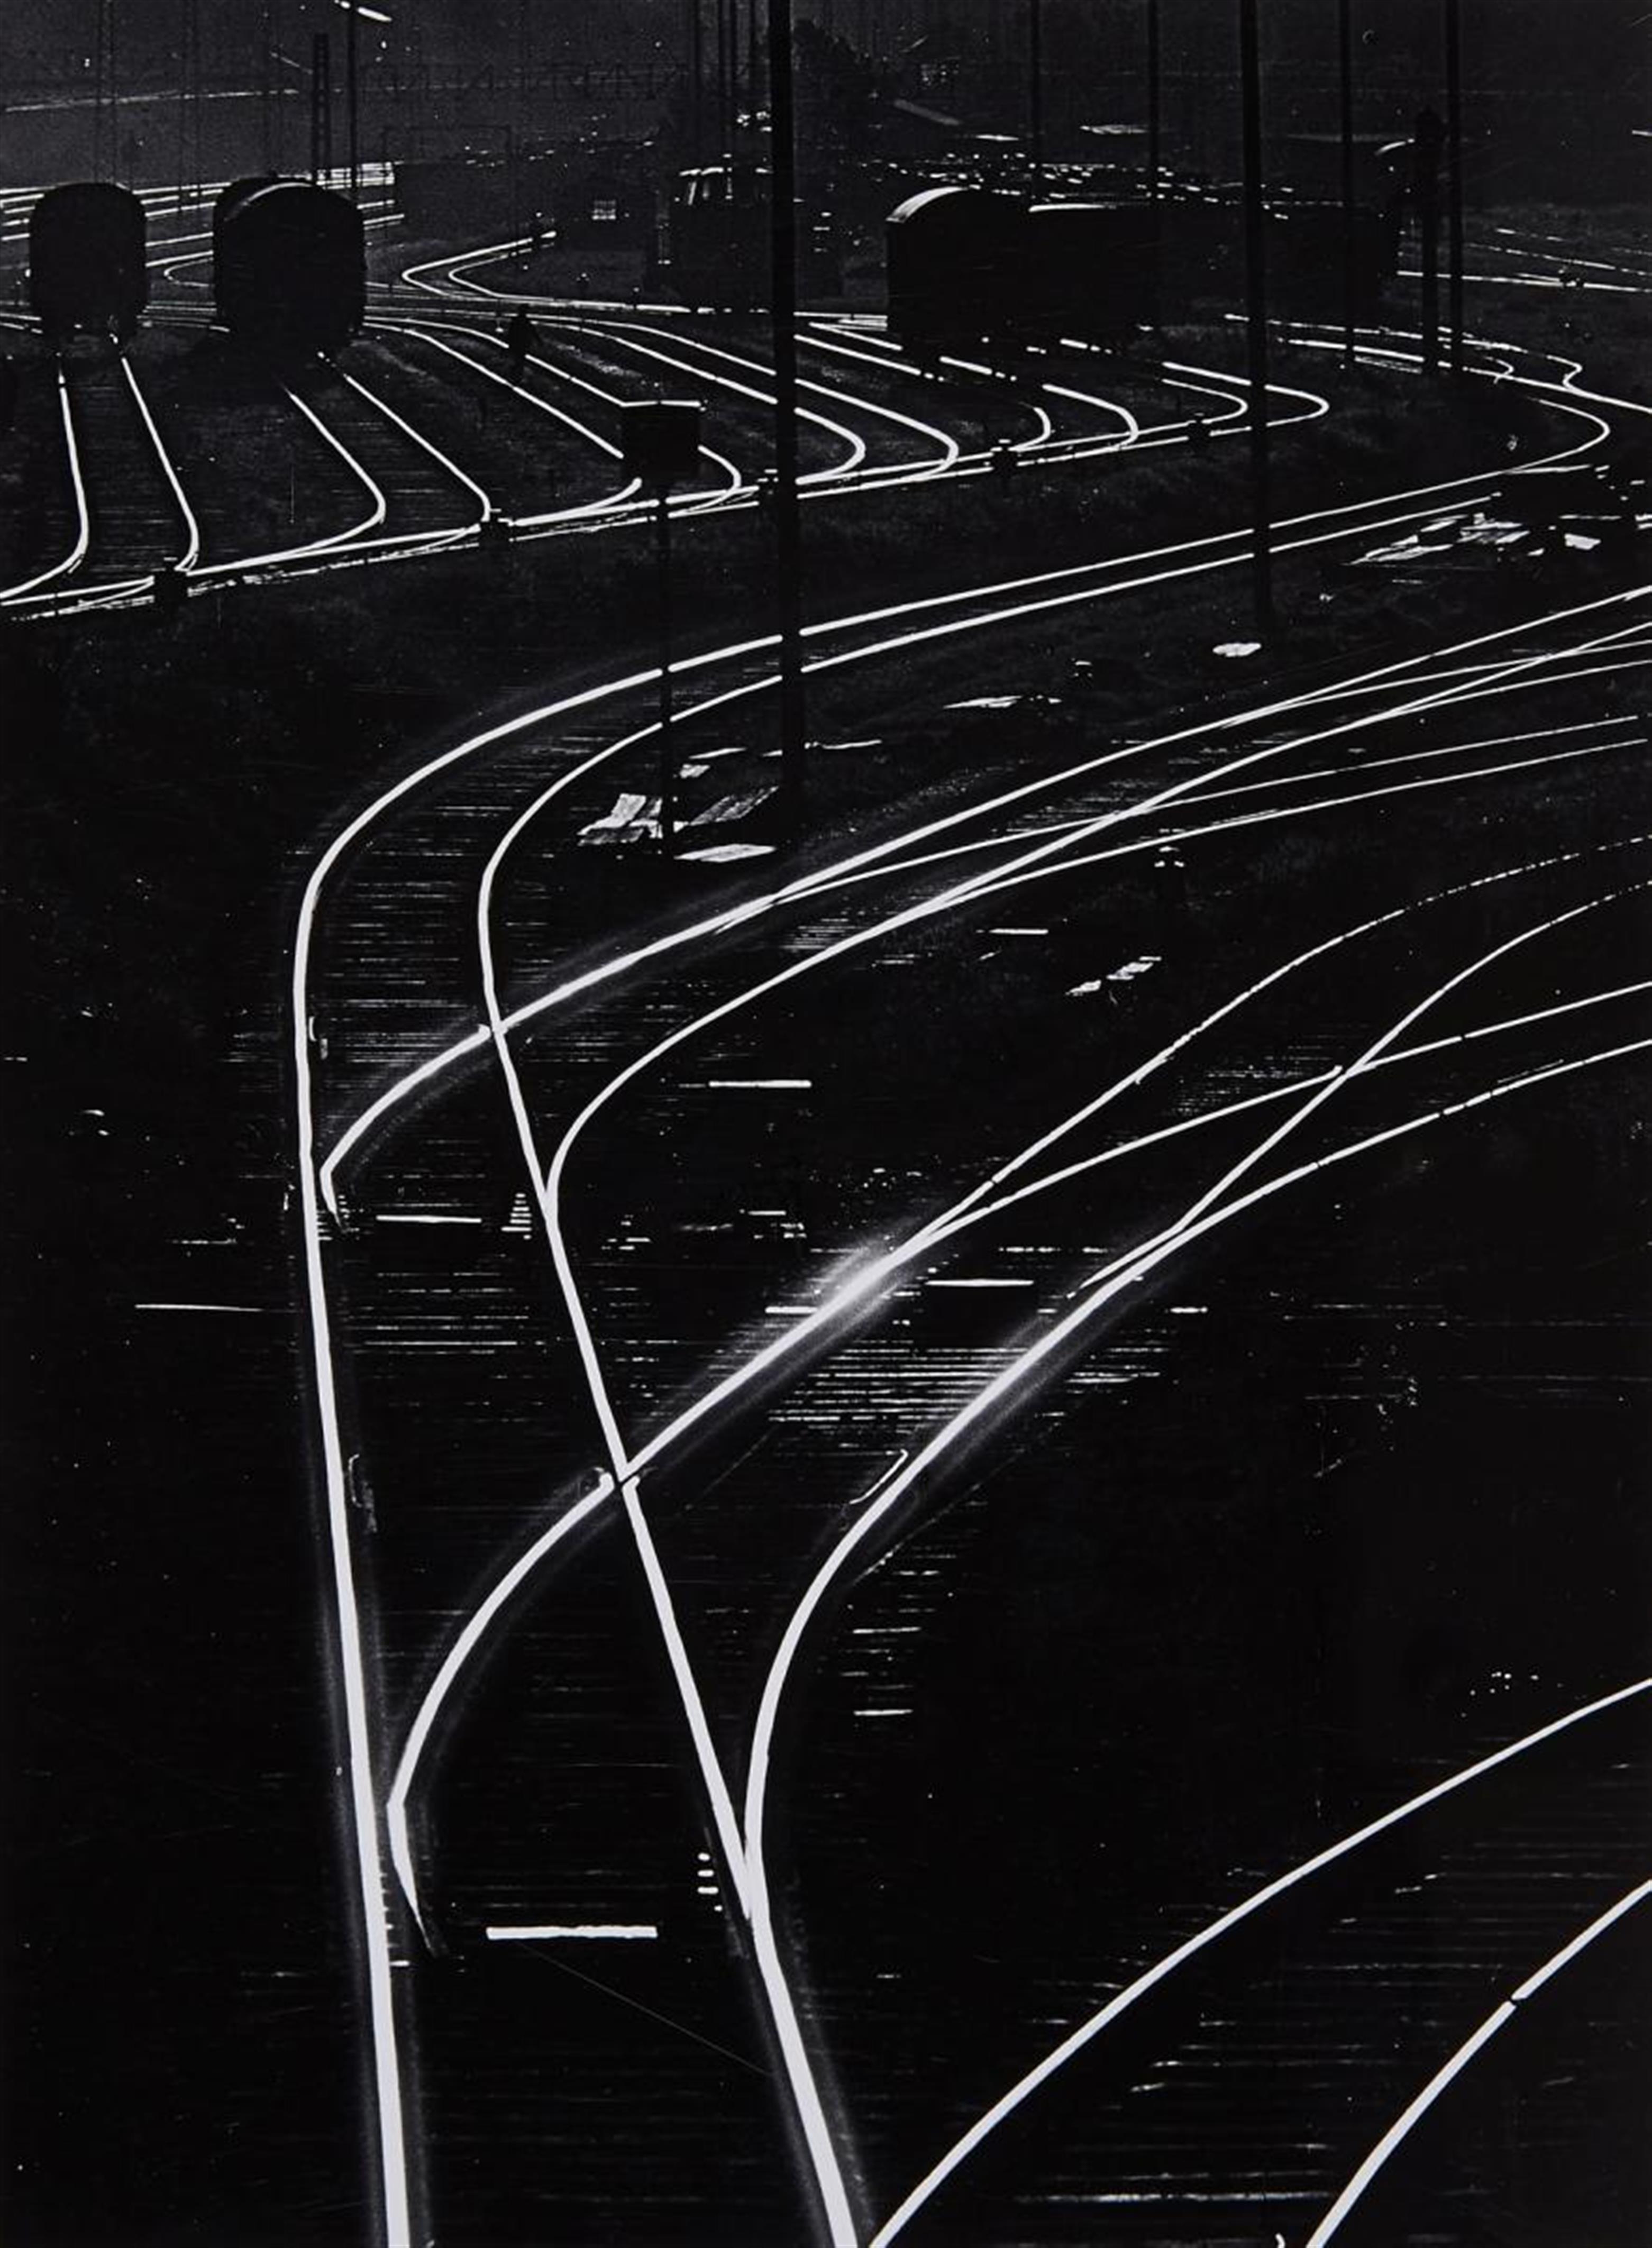 Toni Schneiders - Weichen (Railroad switches) - image-1